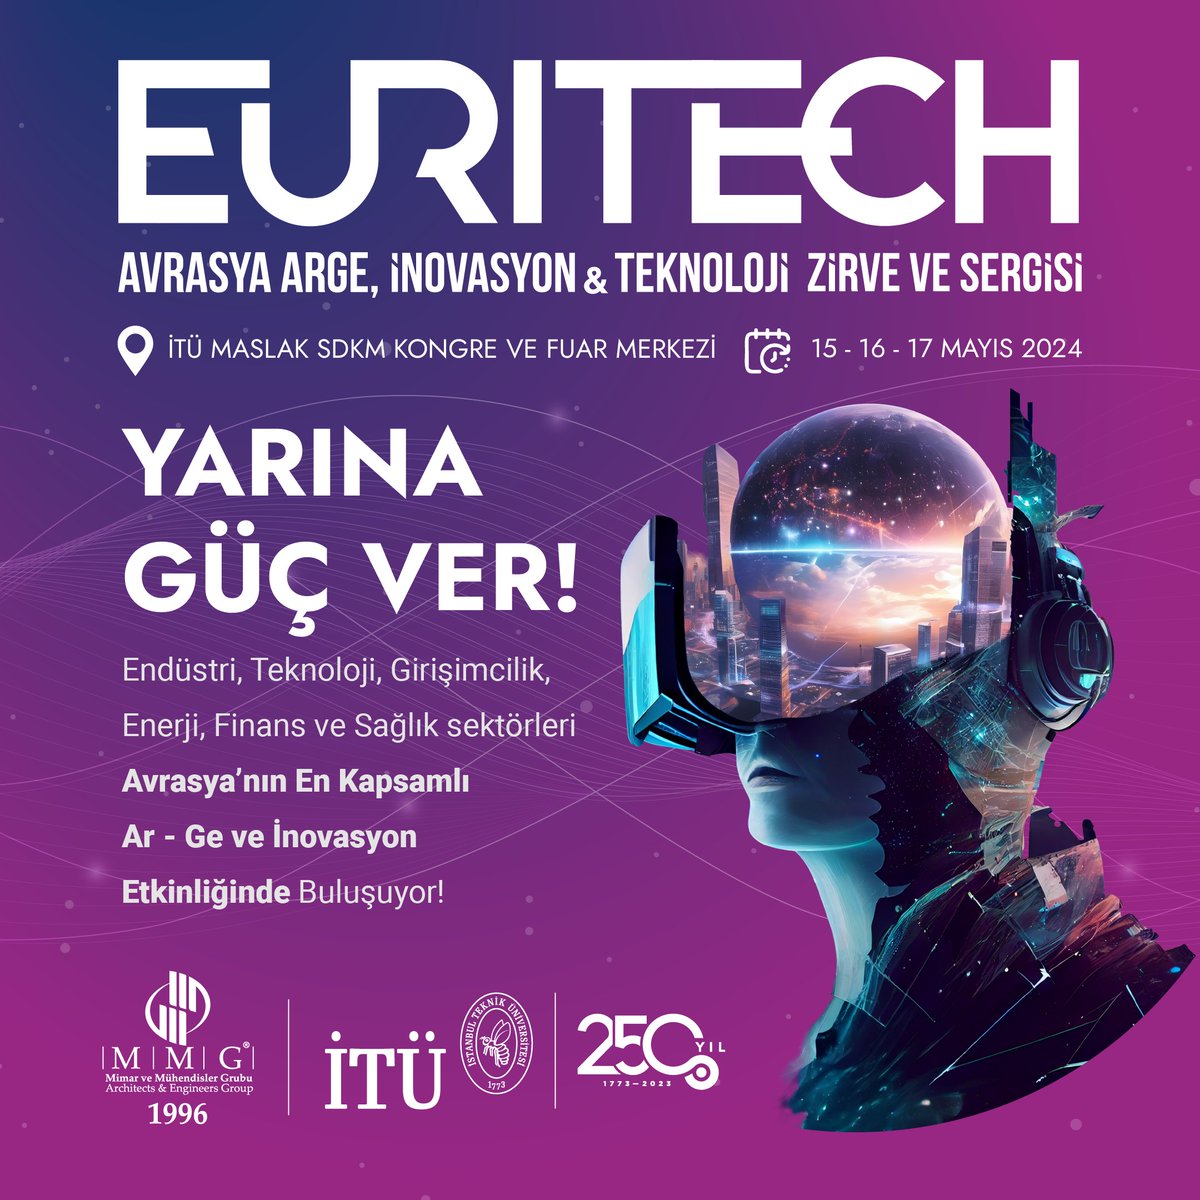 🚀 EURITECH Avrasya Ar-Ge, İnovasyon & Teknoloji Zirve ve Fuarı 2024 Geliyor! 🎟️ Ücretsiz kayıt için hemen tıklayın: bit.ly/euritech24kayit #Inovasyon #Teknoloji #ArGe #EurasiaSummit #Expo2024 #İstanbul #GeleceğinTeknolojileri #İnovasyonZirvesi